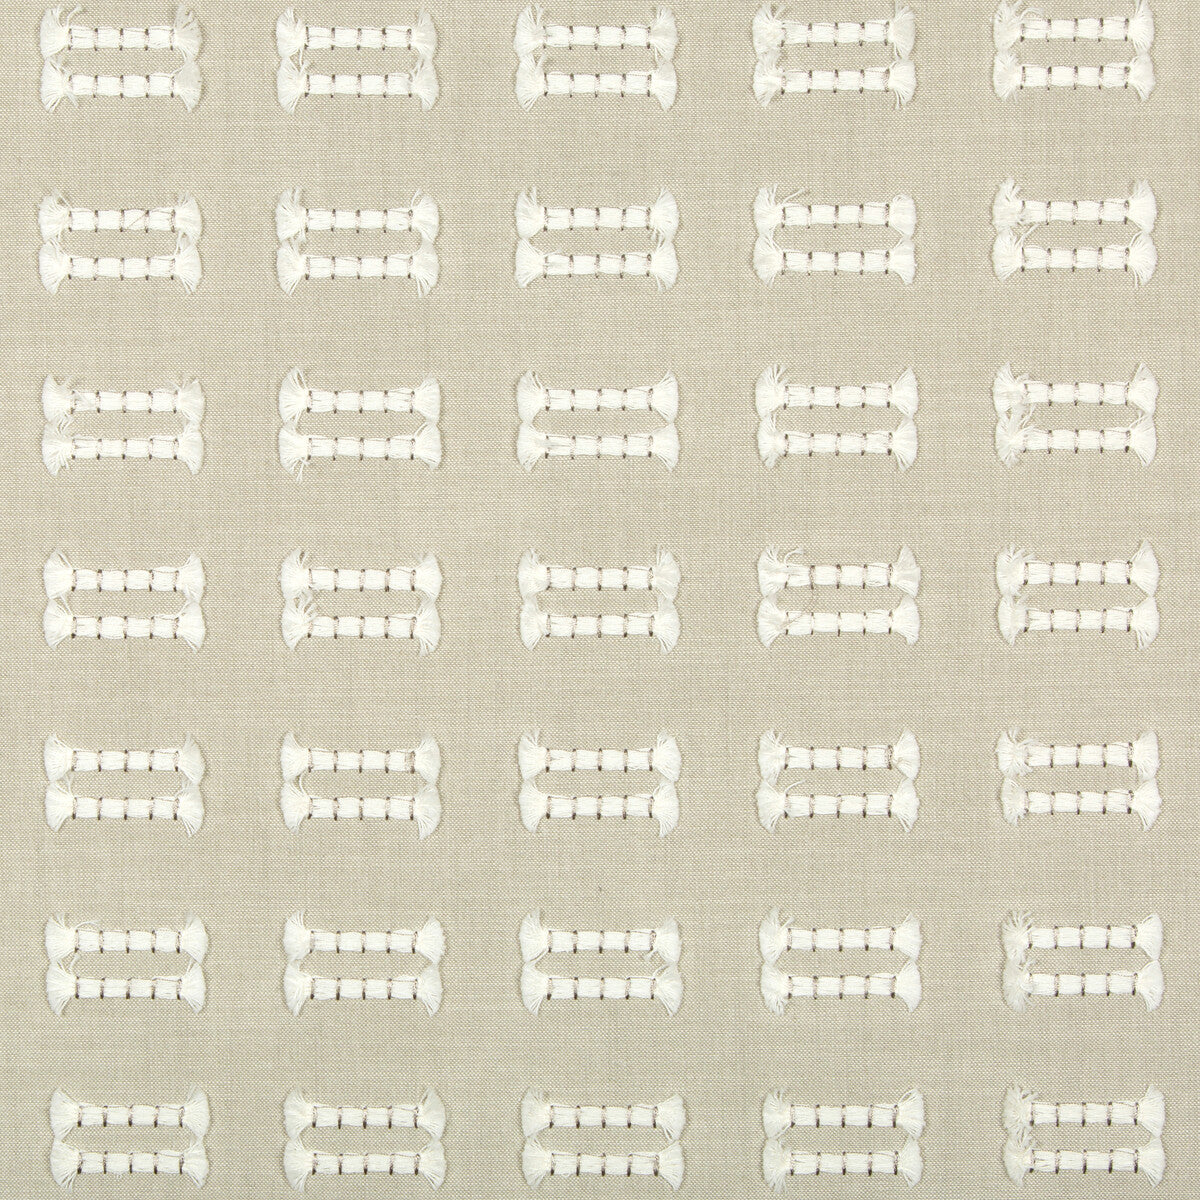 Kravet Basics fabric in 36131-11 color - pattern 36131.11.0 - by Kravet Basics